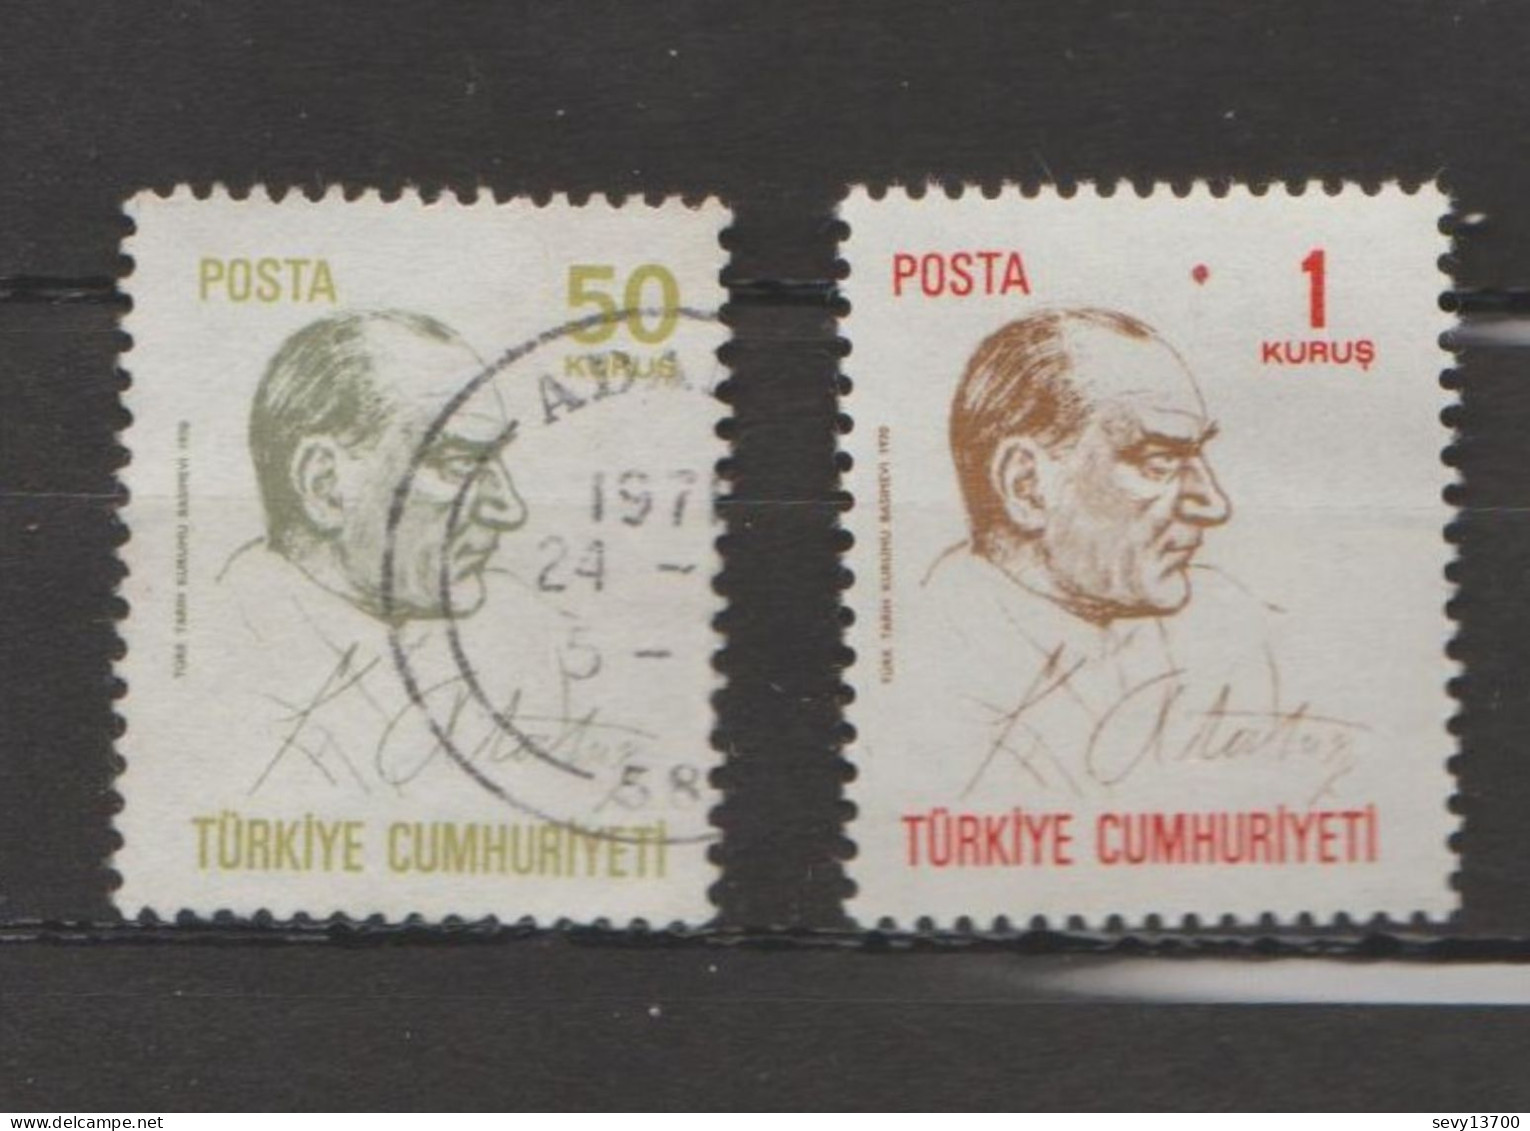 Turquie - Lot 33 Timbres Atatürk Mi 1276 - Mi 1280 - Mi 1301 - Mi 958 Y - Mi 946 Neuf - Mi 960 Y - Mi1493 - 1495 - 2172 - Collections, Lots & Séries